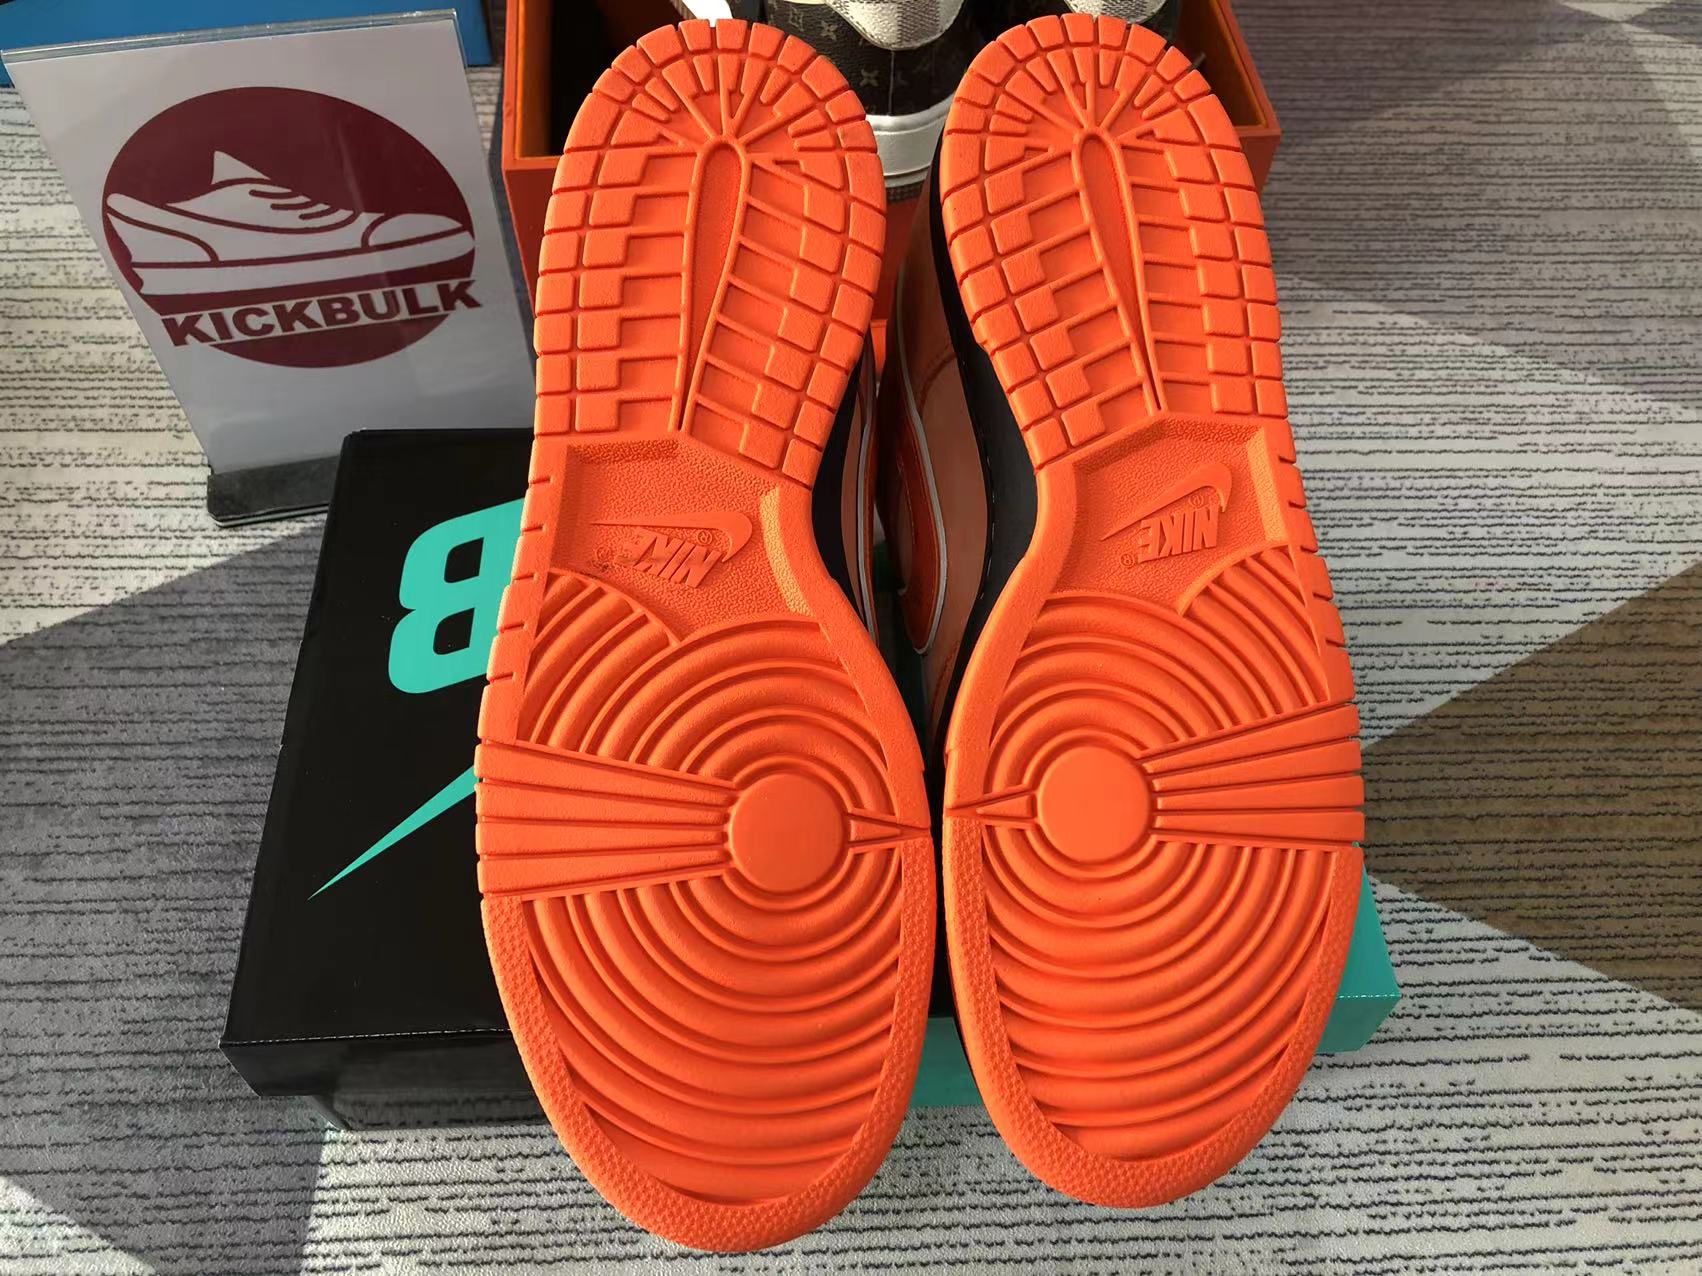 Nike Dunk Sb Low Orange Lobster Fd8776 800 10 - www.kickbulk.cc